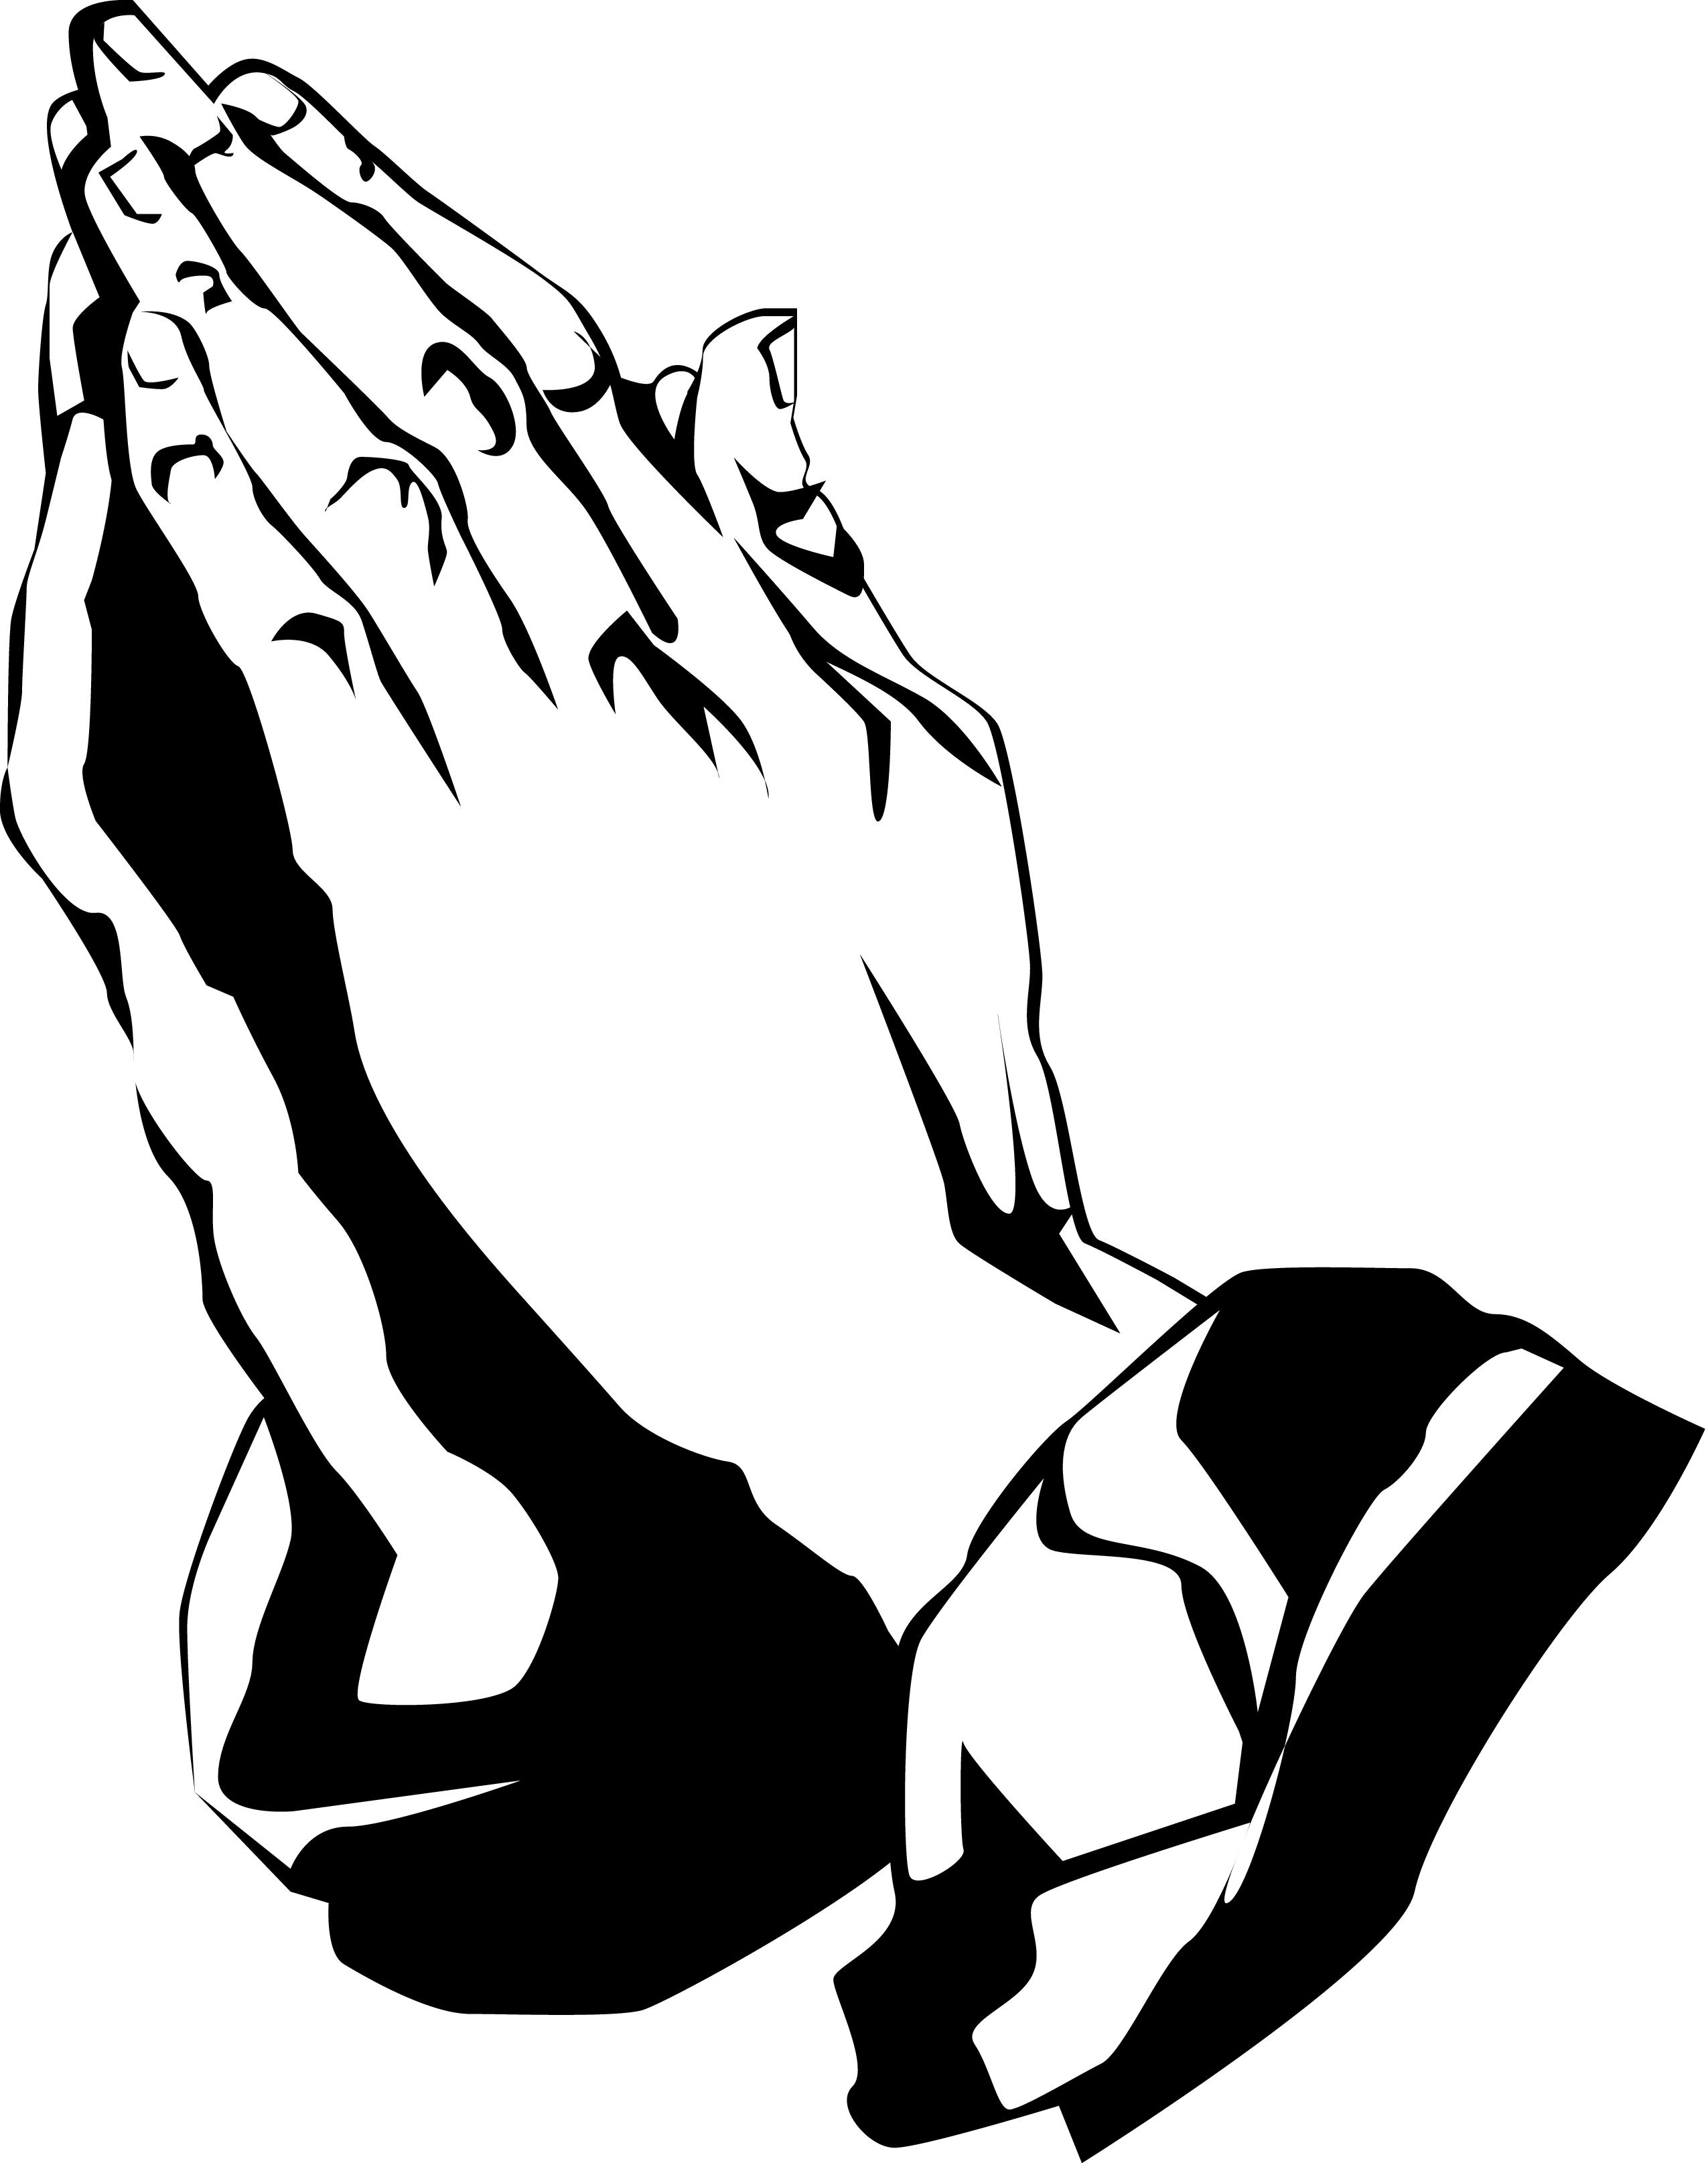 Church praying hands clipart